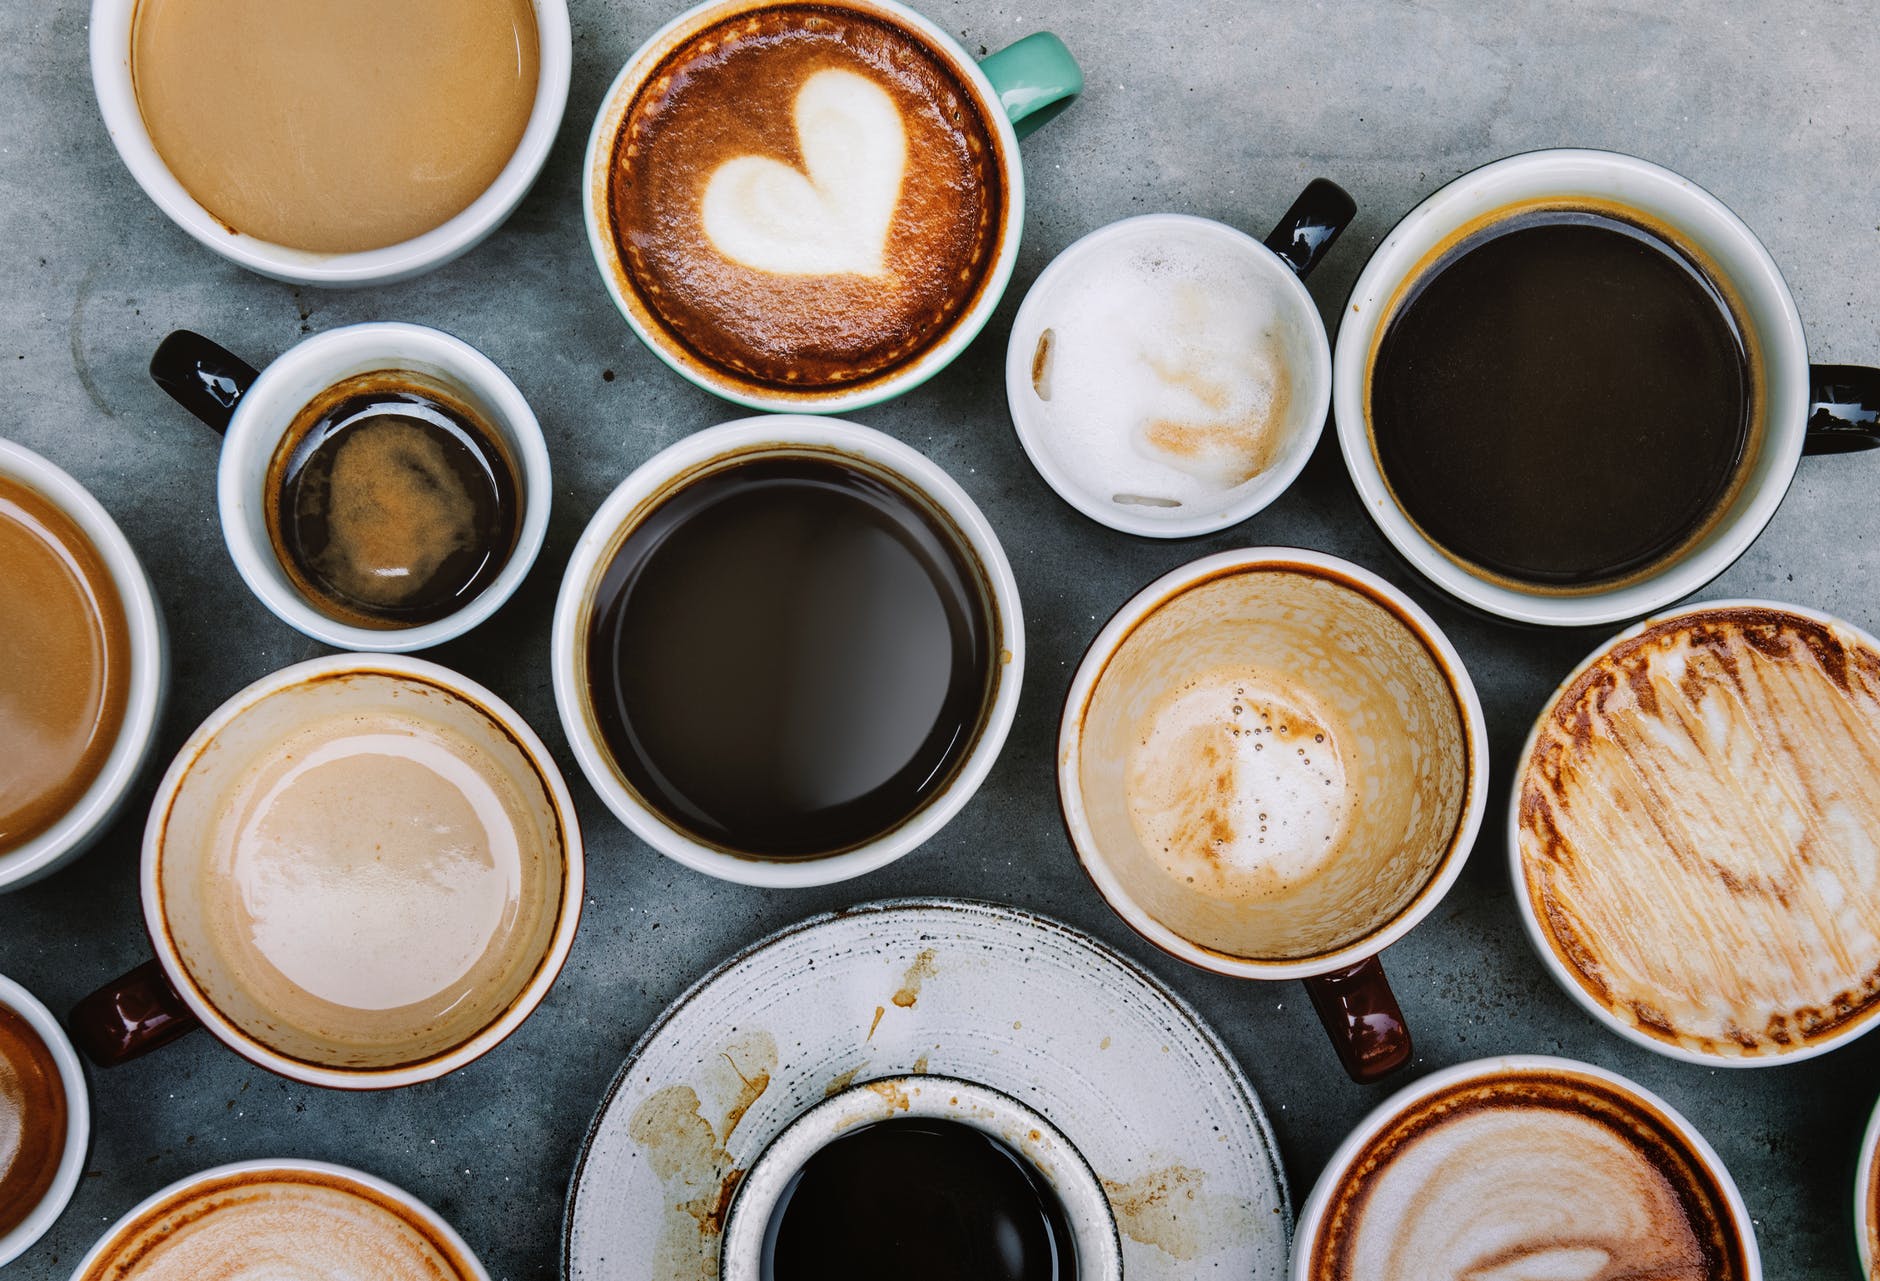 Εσύ θα τους δοκίμαζες; – Δέκα παράξενοι καφέδες που καταναλώνονται στον κόσμο